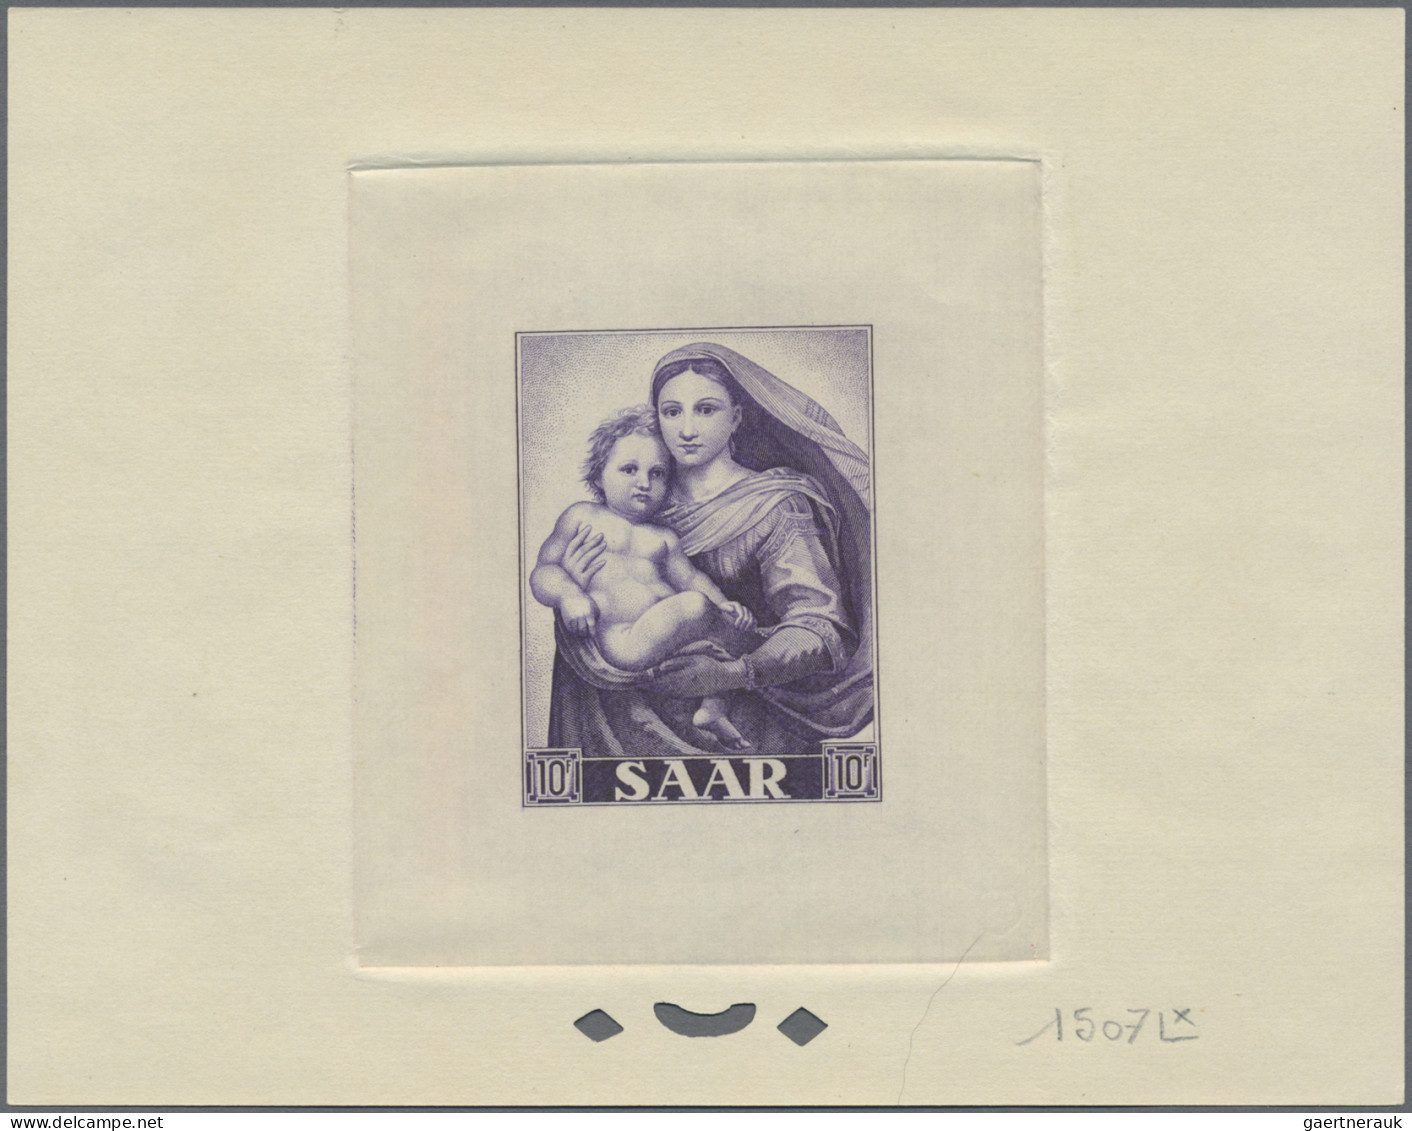 Saarland (1947/56): 1954/1955 'Dürer': Die zwei Ausgaben mit je drei Marken mit